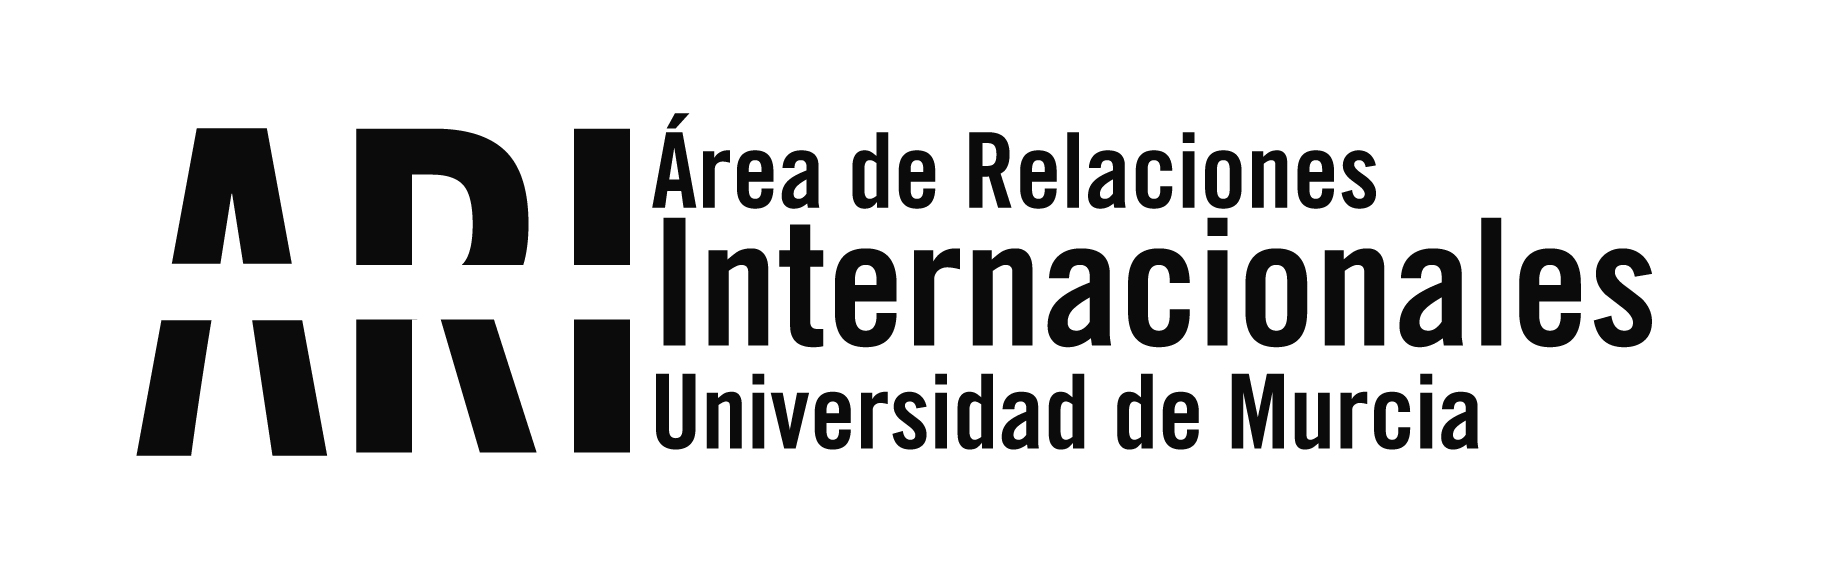 2014 - Viajes Institucionales - Área de Relaciones Internacionales